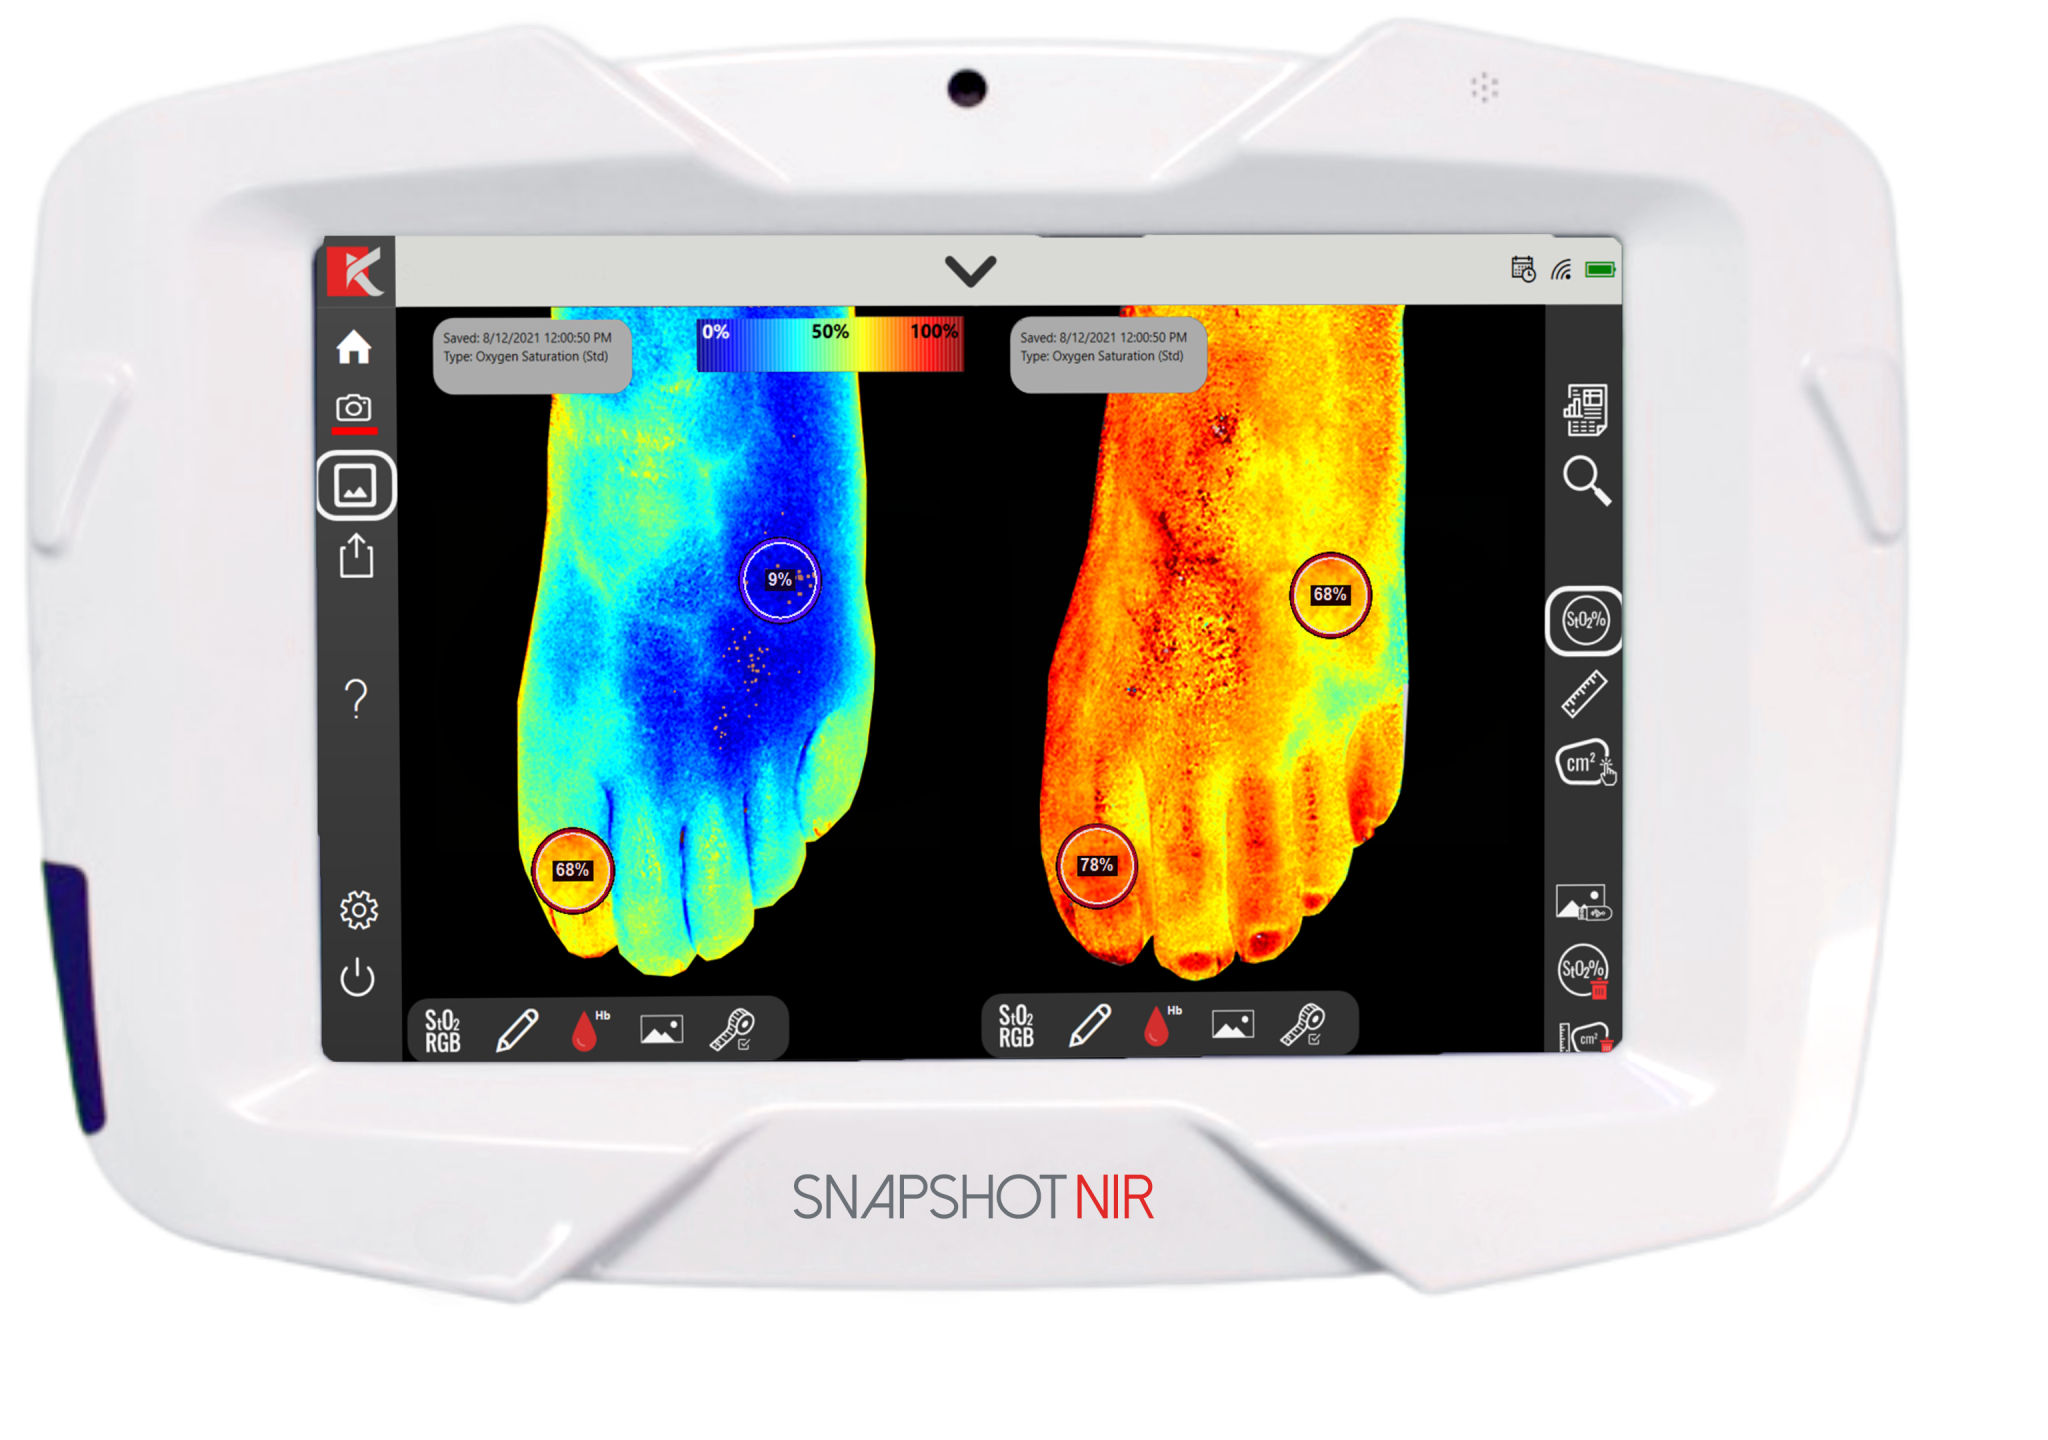 Bärbar diagnostisk enhet "Snapshot NIR" ska ersätta ultraljud och röntgen